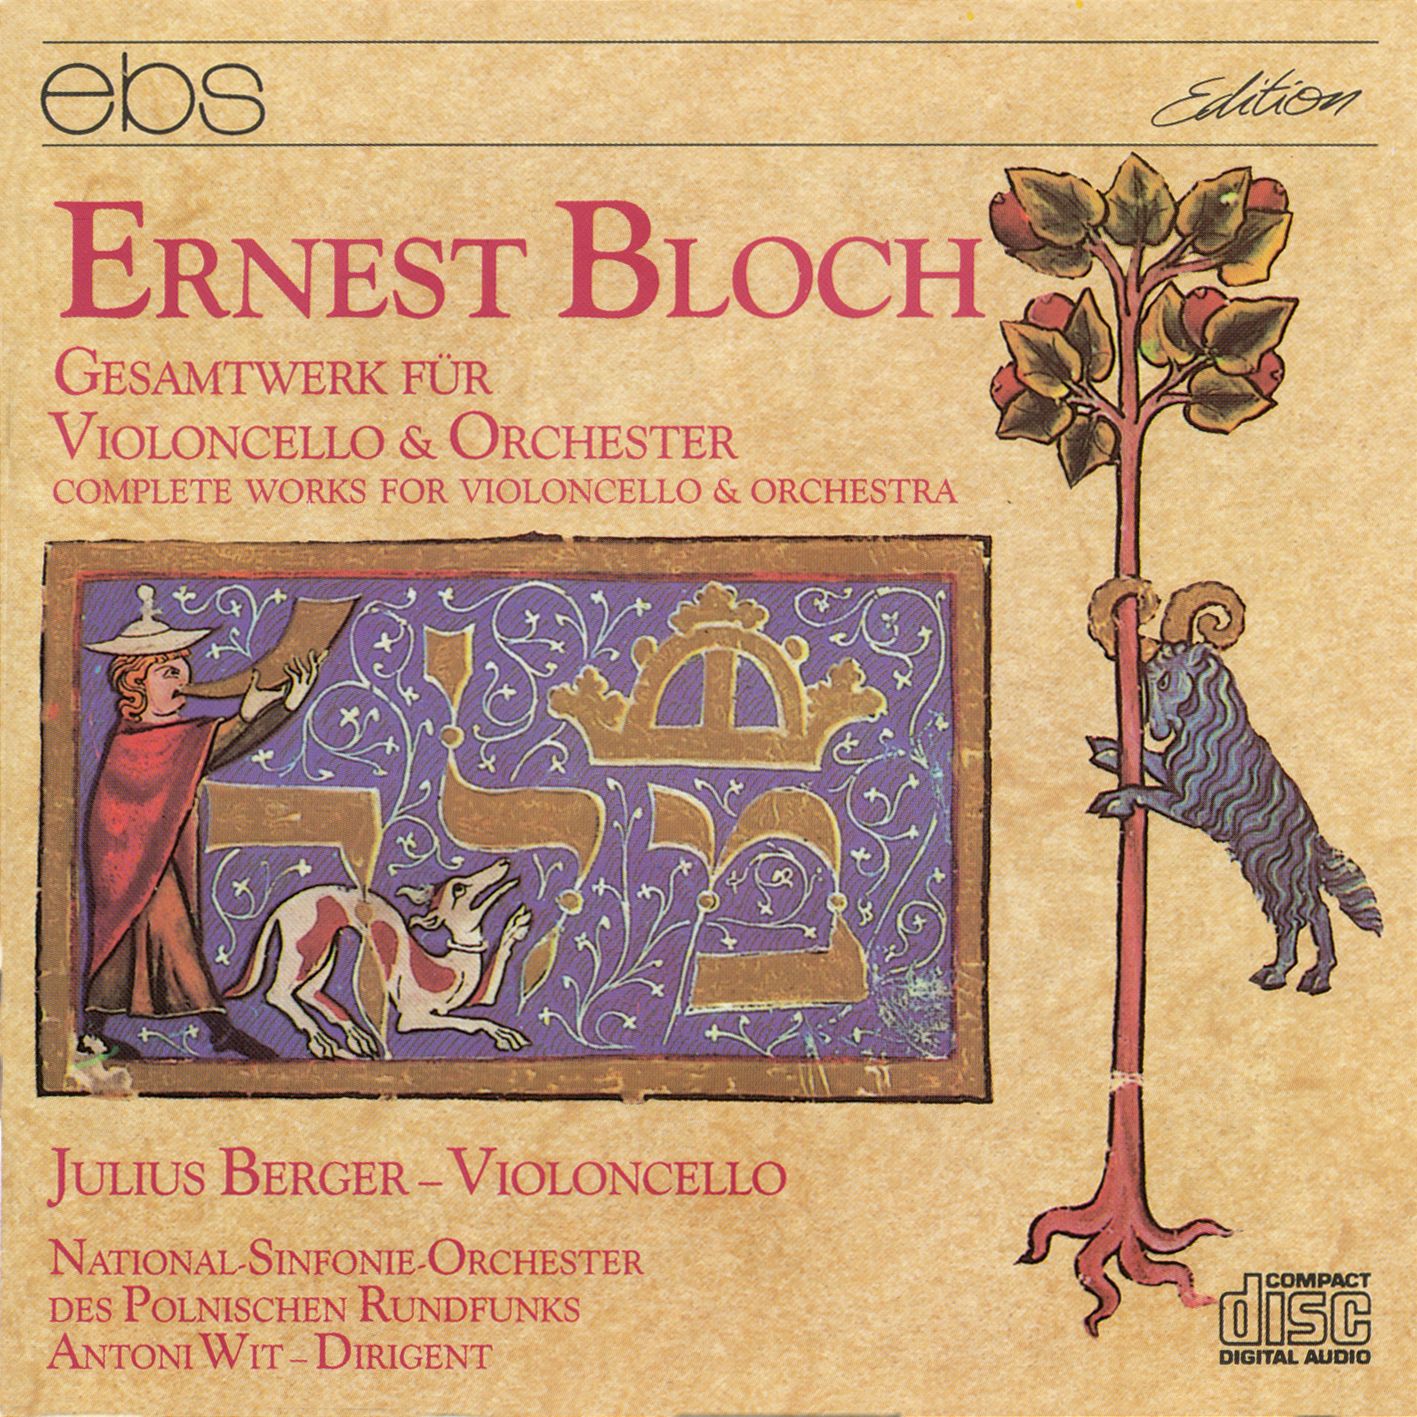 Ernest Bloch - Gesamtwerk für Violoncello